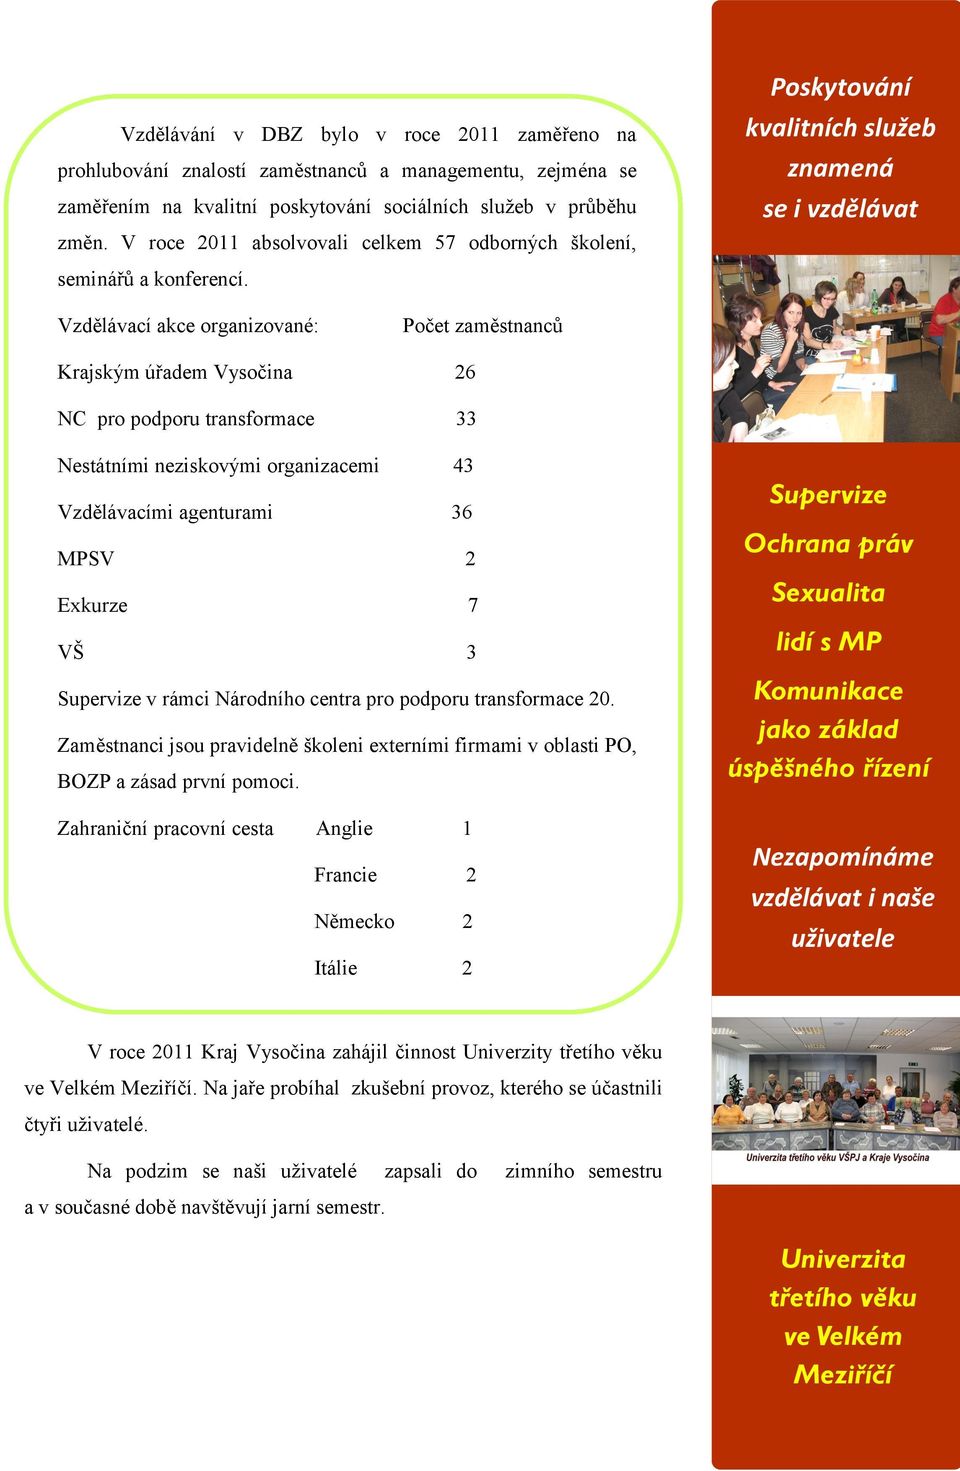 Vzdělávací akce organizované: Počet zaměstnanců Krajským úřadem Vysočina 26 NC pro podporu transformace 33 Nestátními neziskovými organizacemi 43 Vzdělávacími agenturami 36 MPSV 2 Exkurze 7 VŠ 3